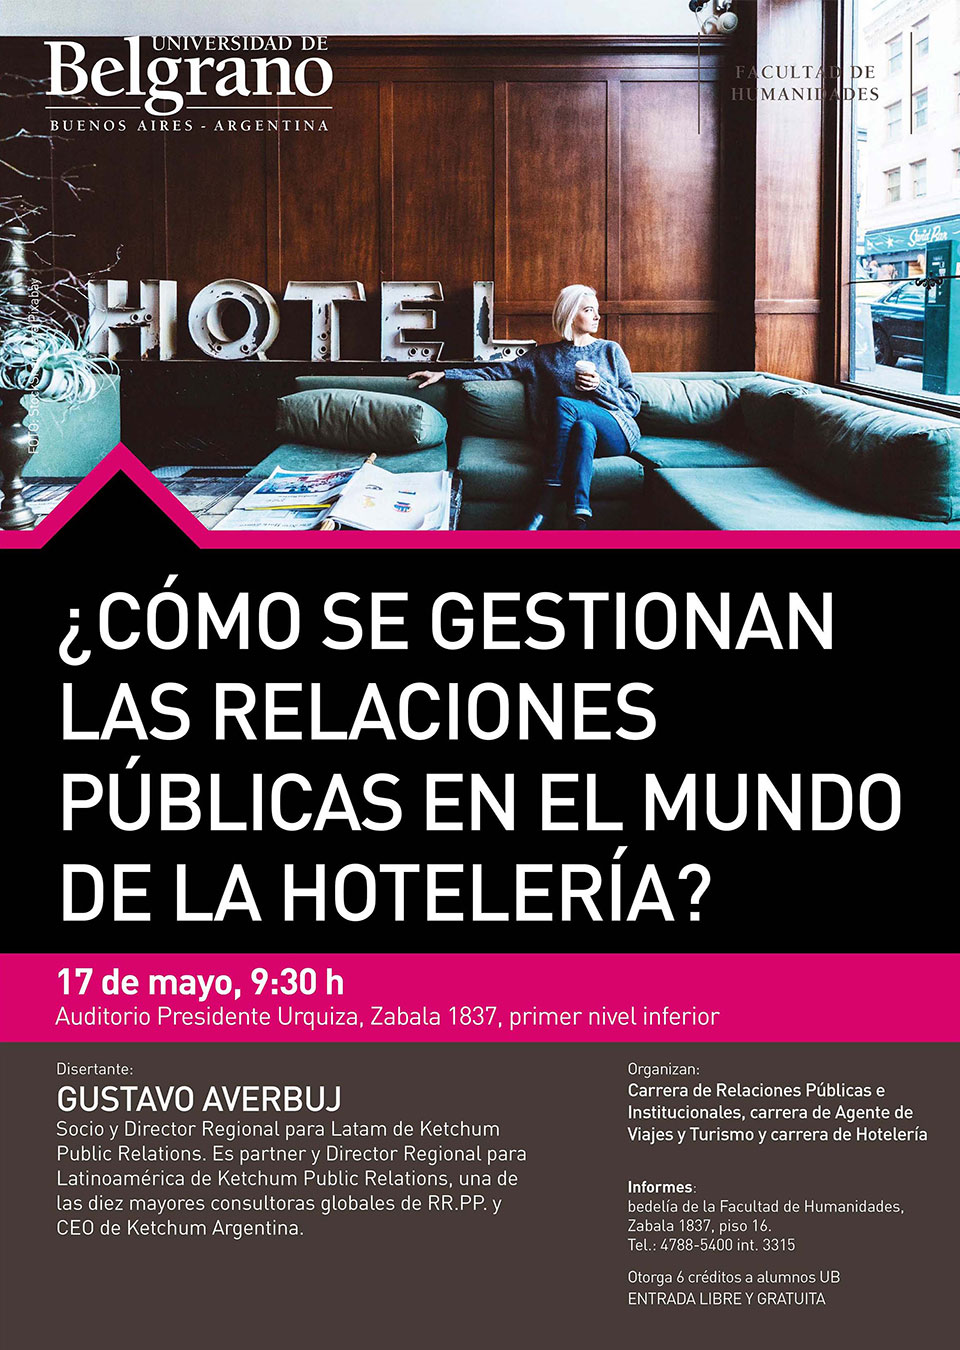 Universidad de Belgrano | Relaciones Públicas | ¿Cómo se Gestionan las Relaciones Públicas en el Mundo de la Hotelería?